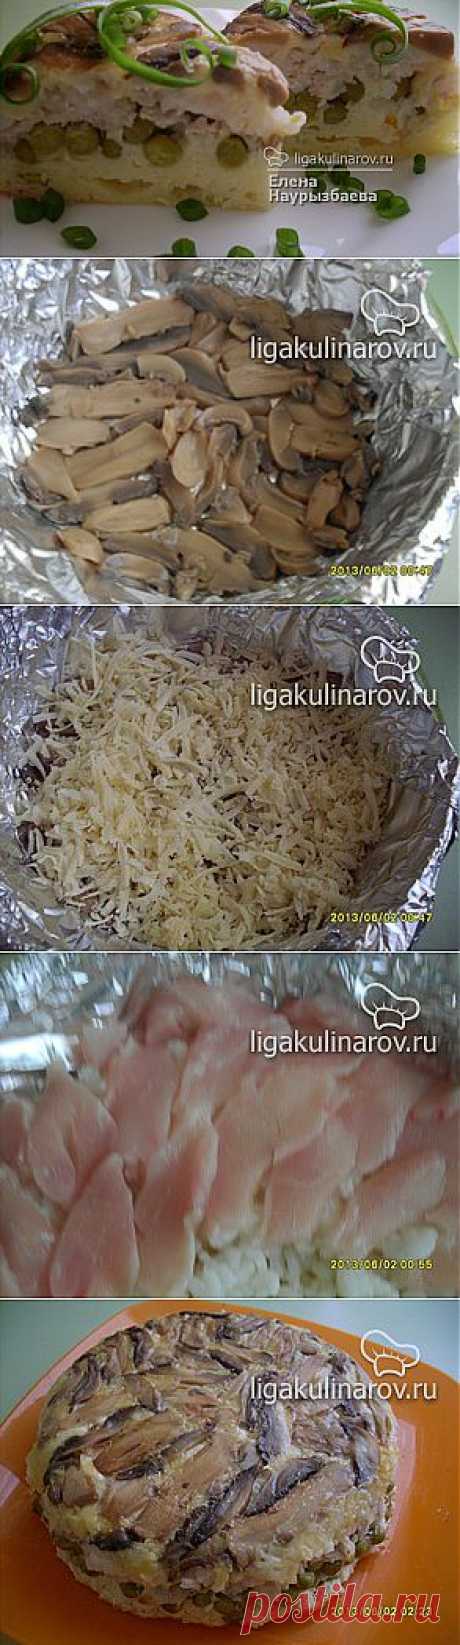 Слоеный пирог с курицей, грибами и рисом – рецепт с фото от Лиги Кулинаров, пошаговый рецепт